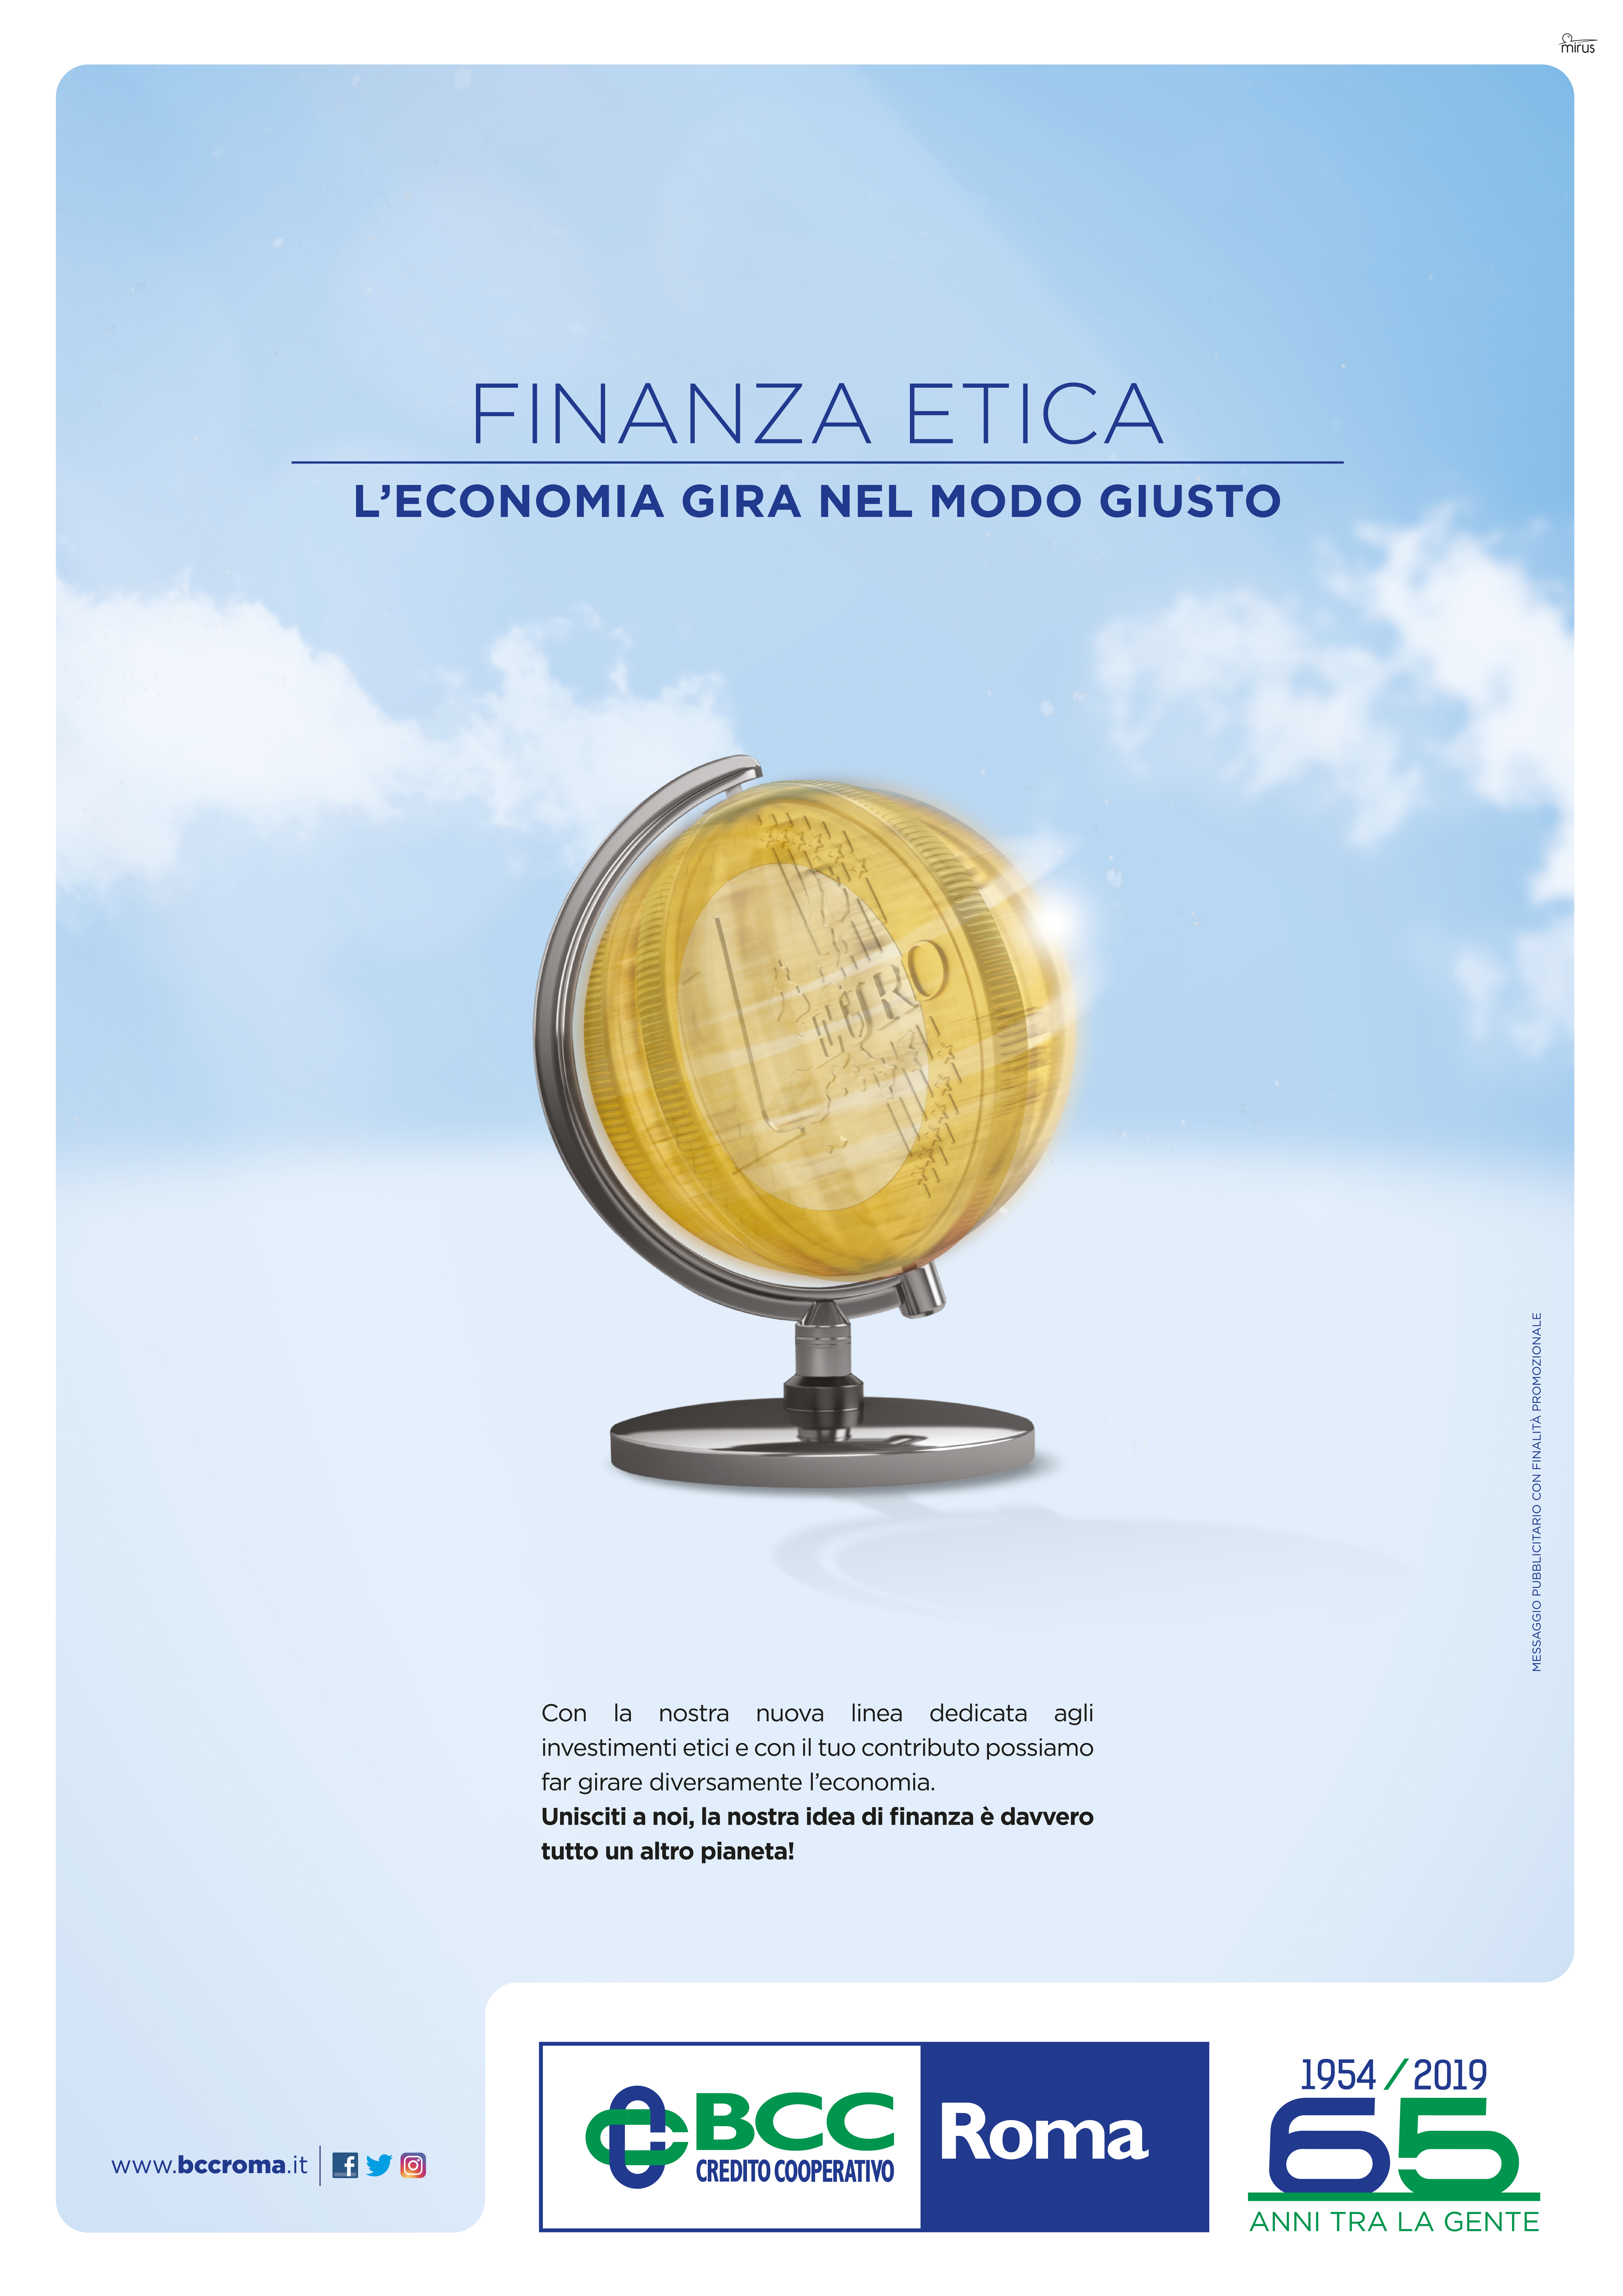 BCC Roma, ADV “Finanza Etica”